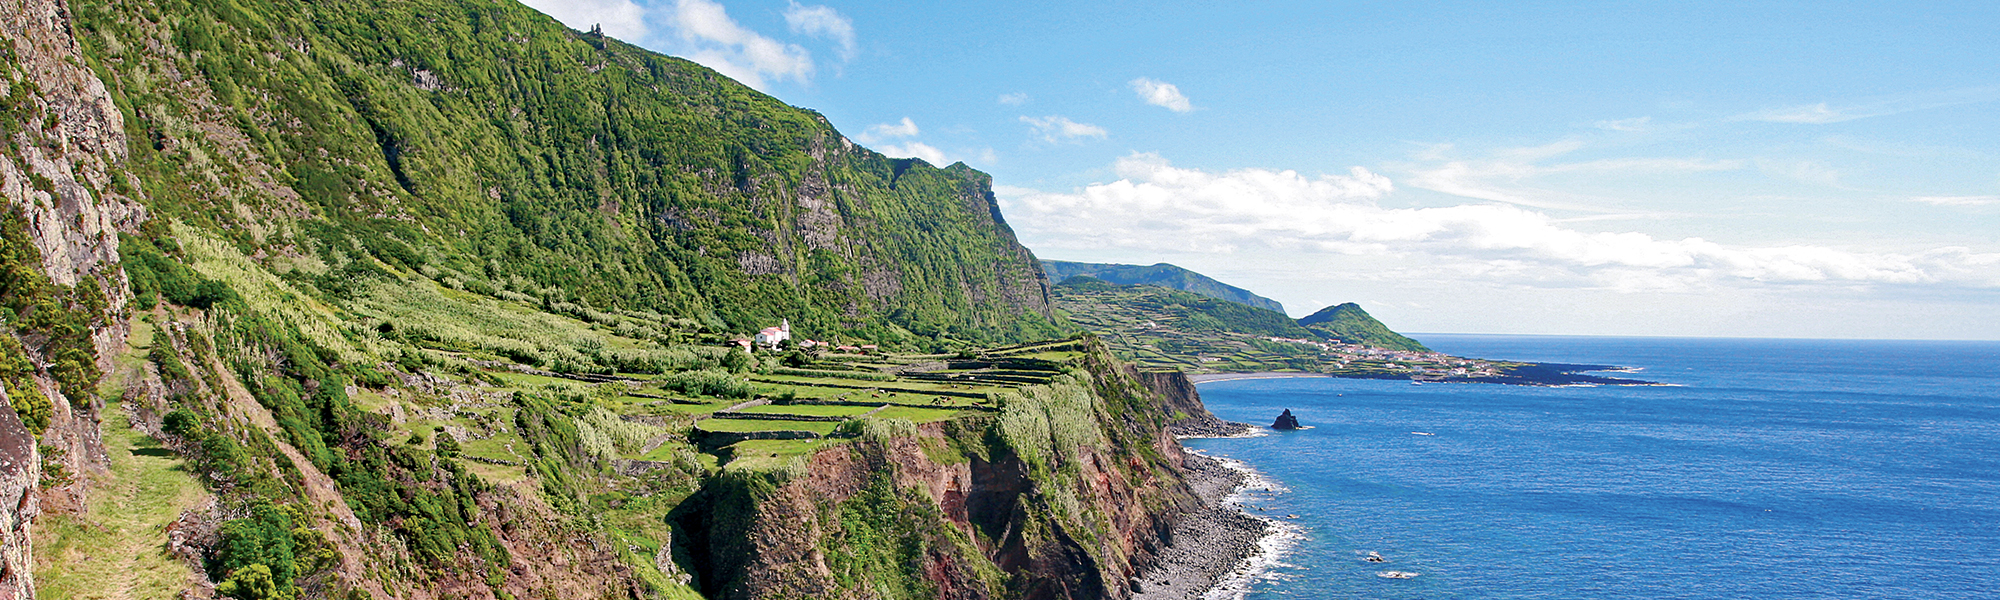 Observation animalière Açores © Veracor - Turismo de Acores